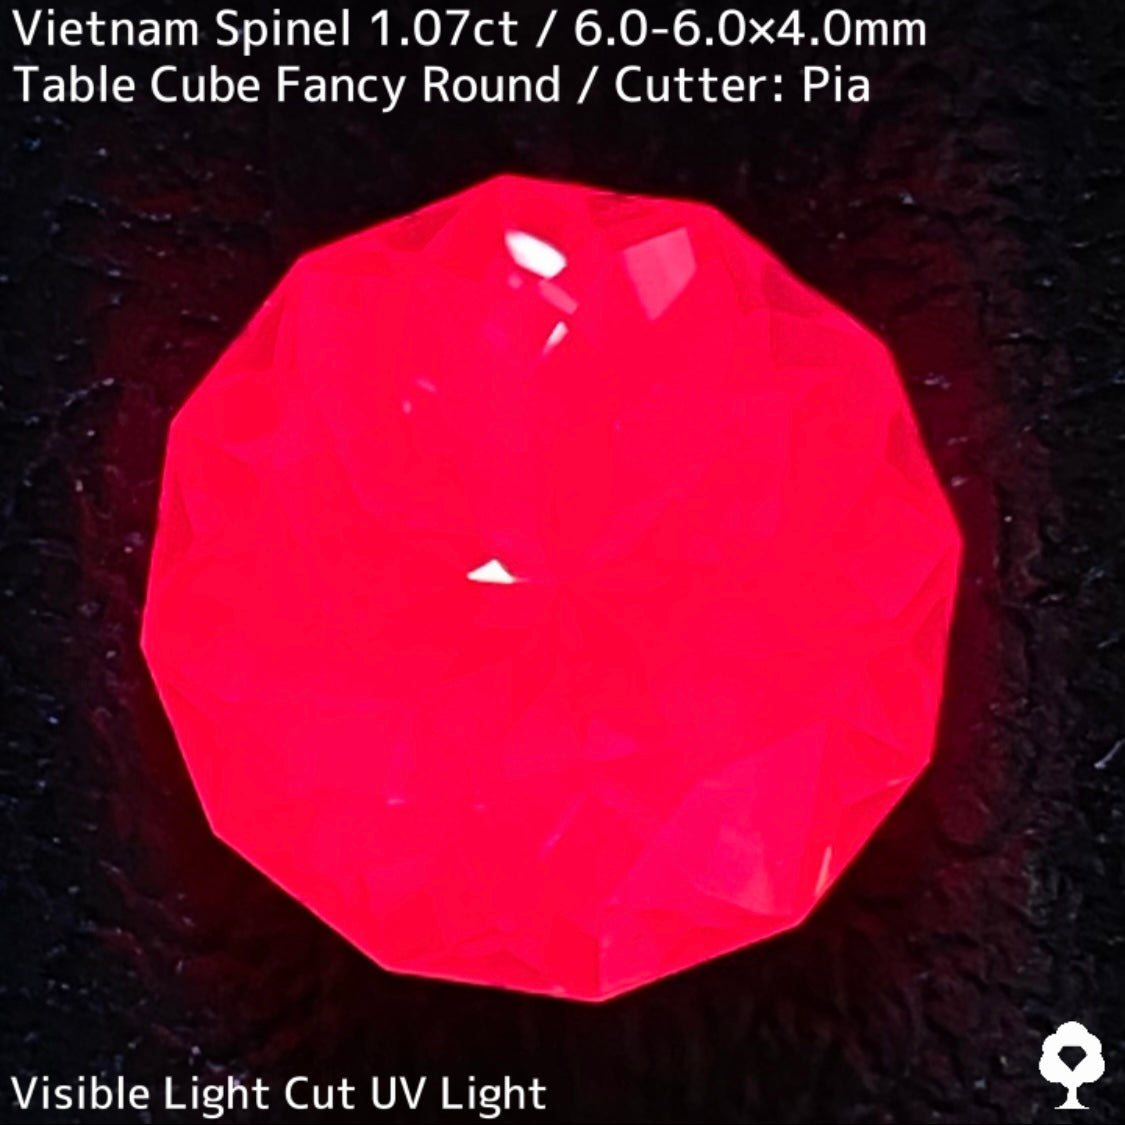 ベトナム産スピネル1.07ct★原石からつくりあげた美しすぎるピンクと石質の一級品1ctアップ